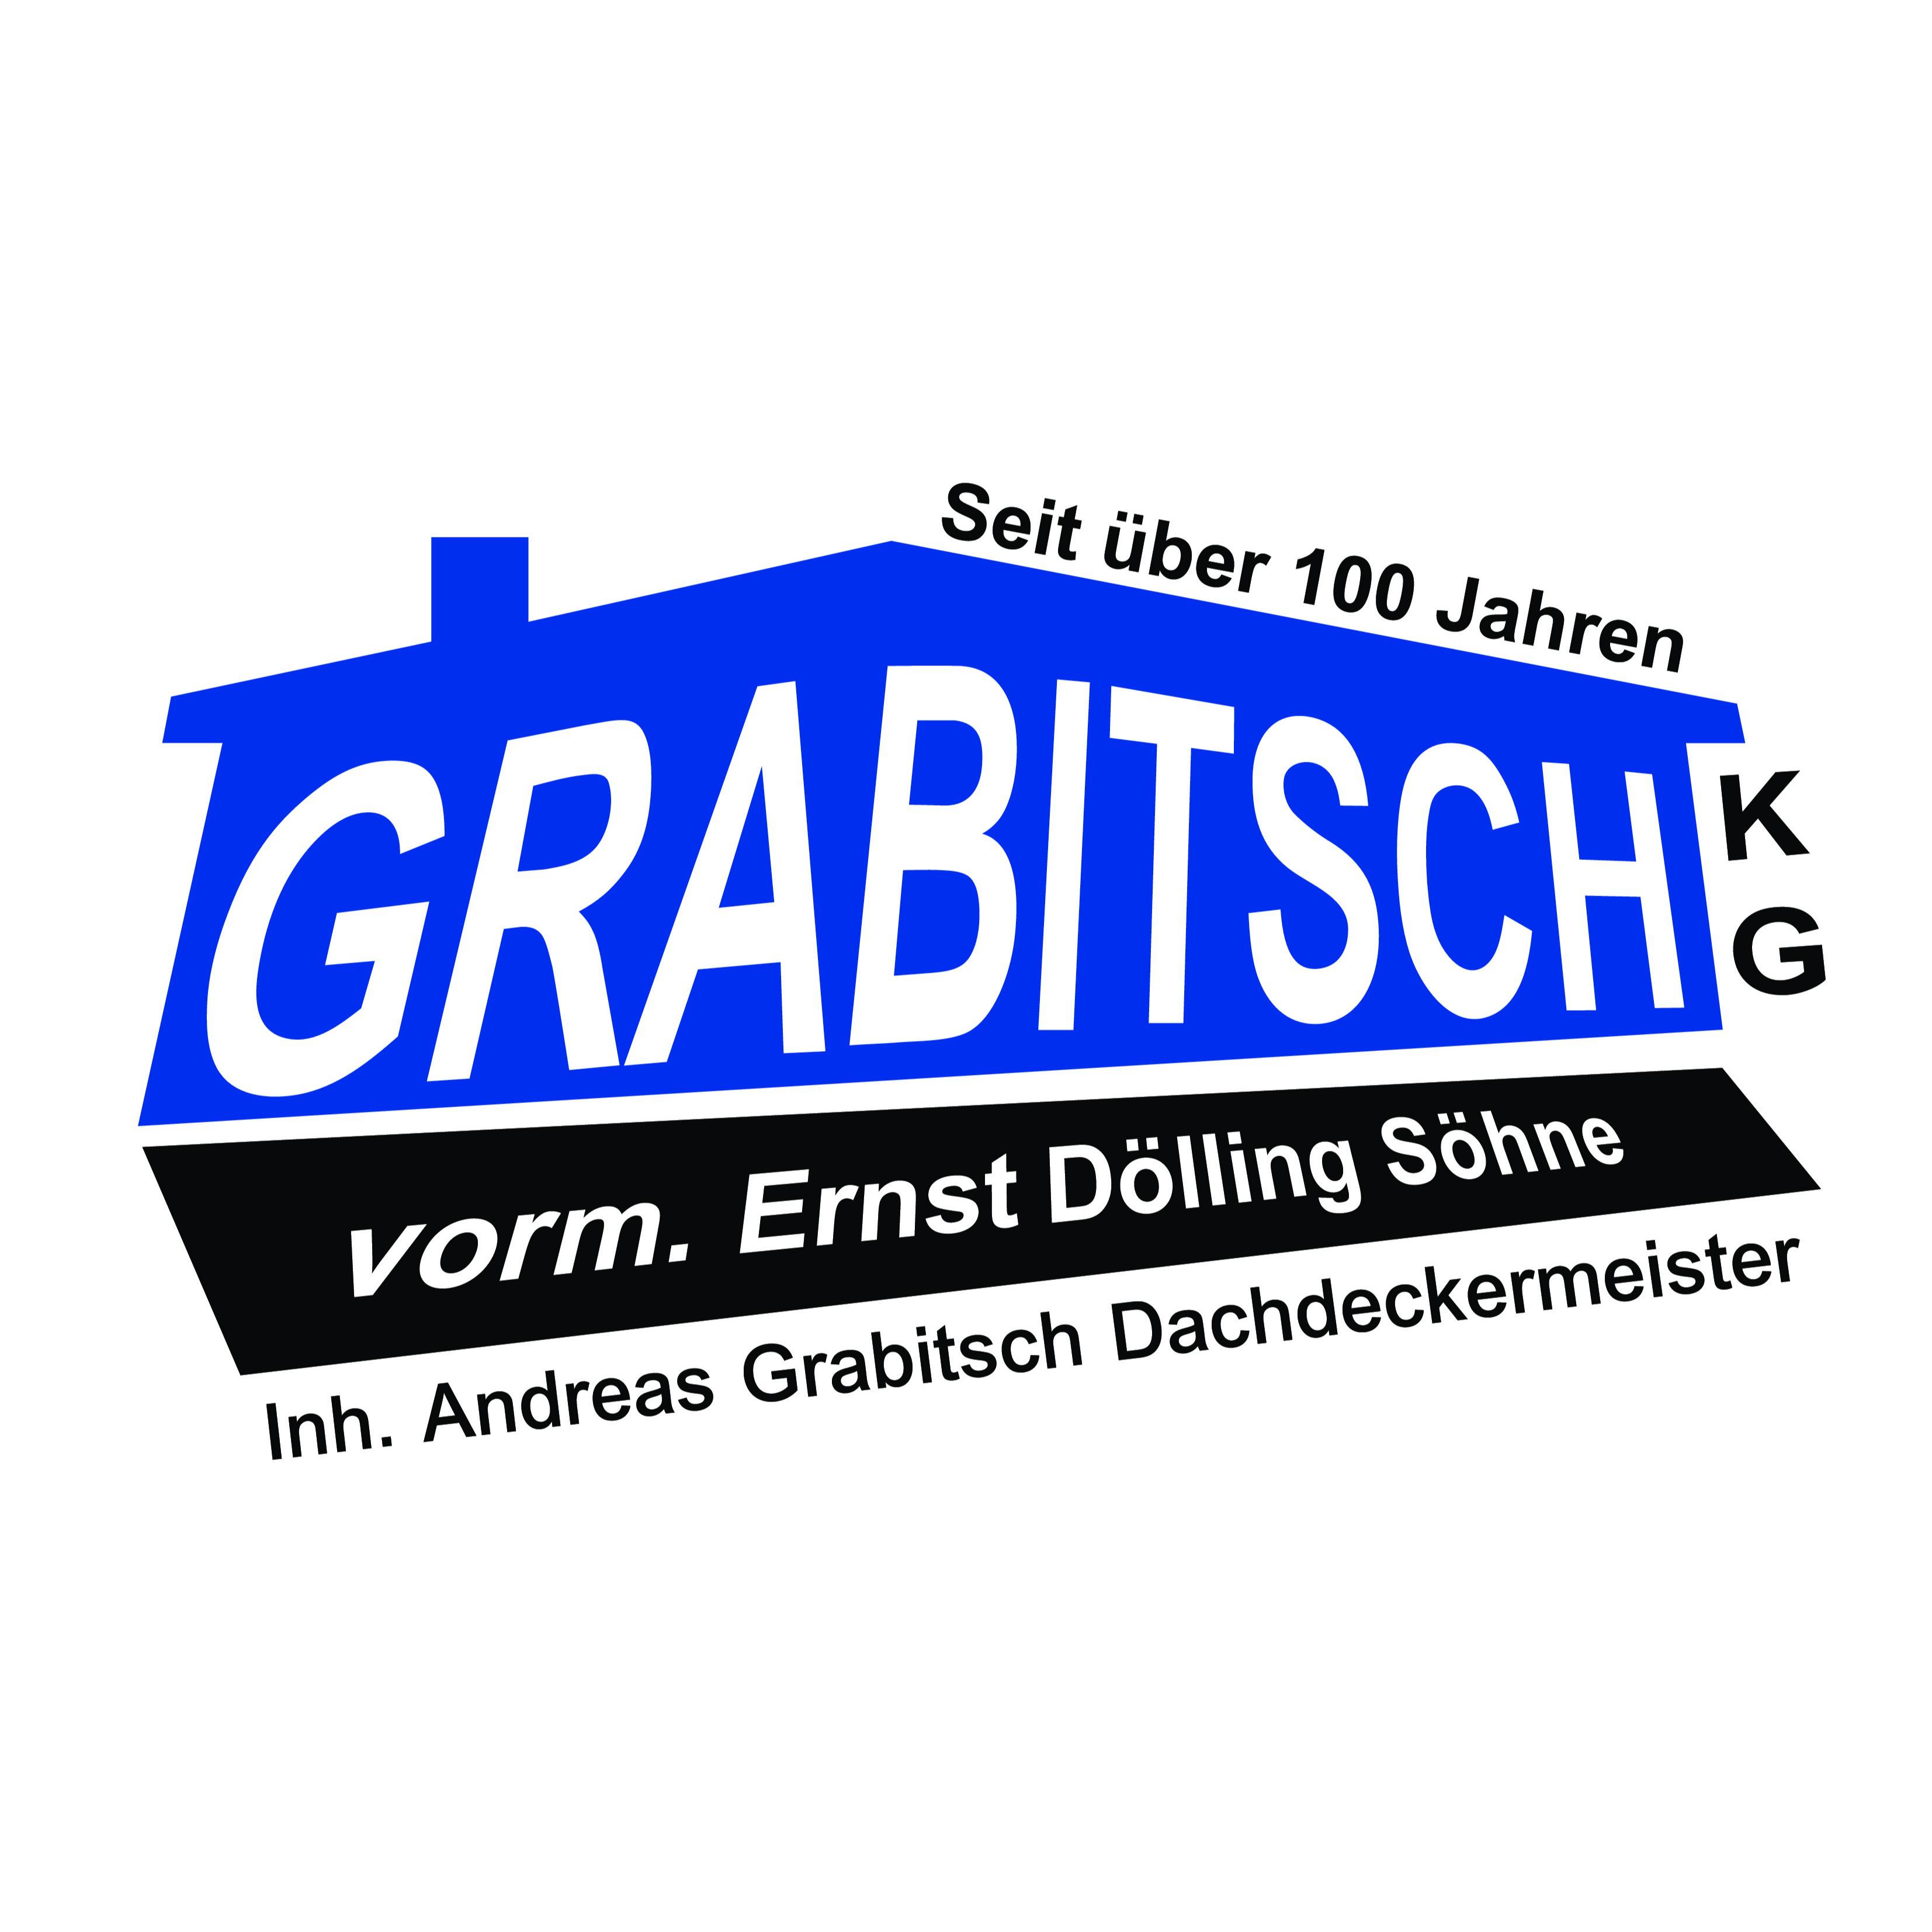 Grabitsch KG Dachdeckermeister in Bad Soden am Taunus - Logo